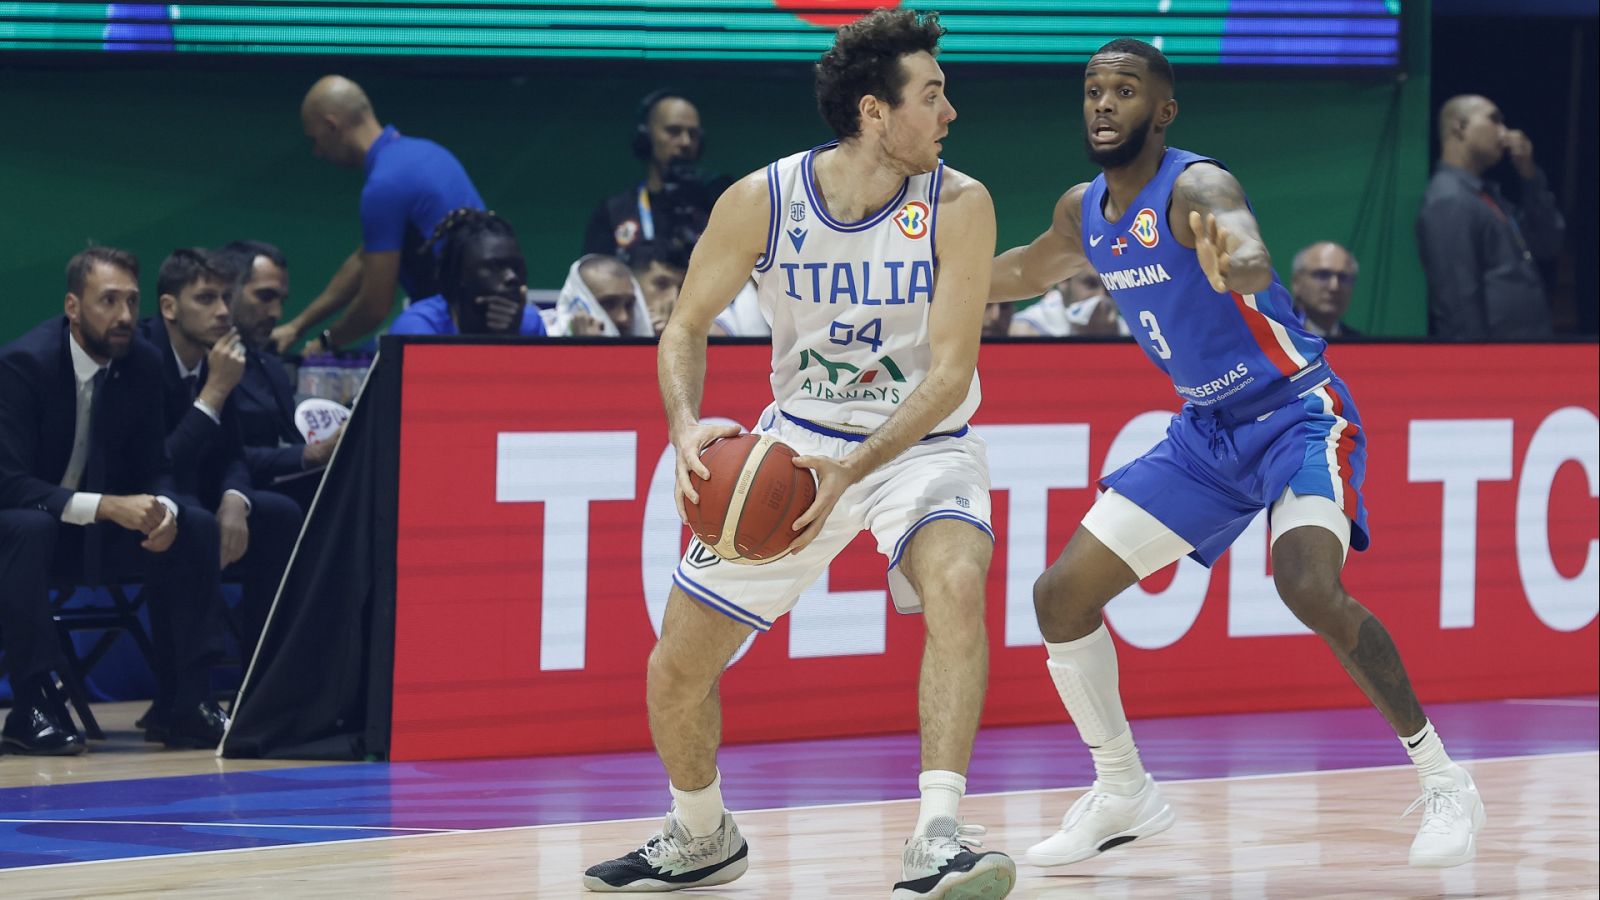 Baloncesto - Campeonato del Mundo Masculino: Italia - República Dominicana